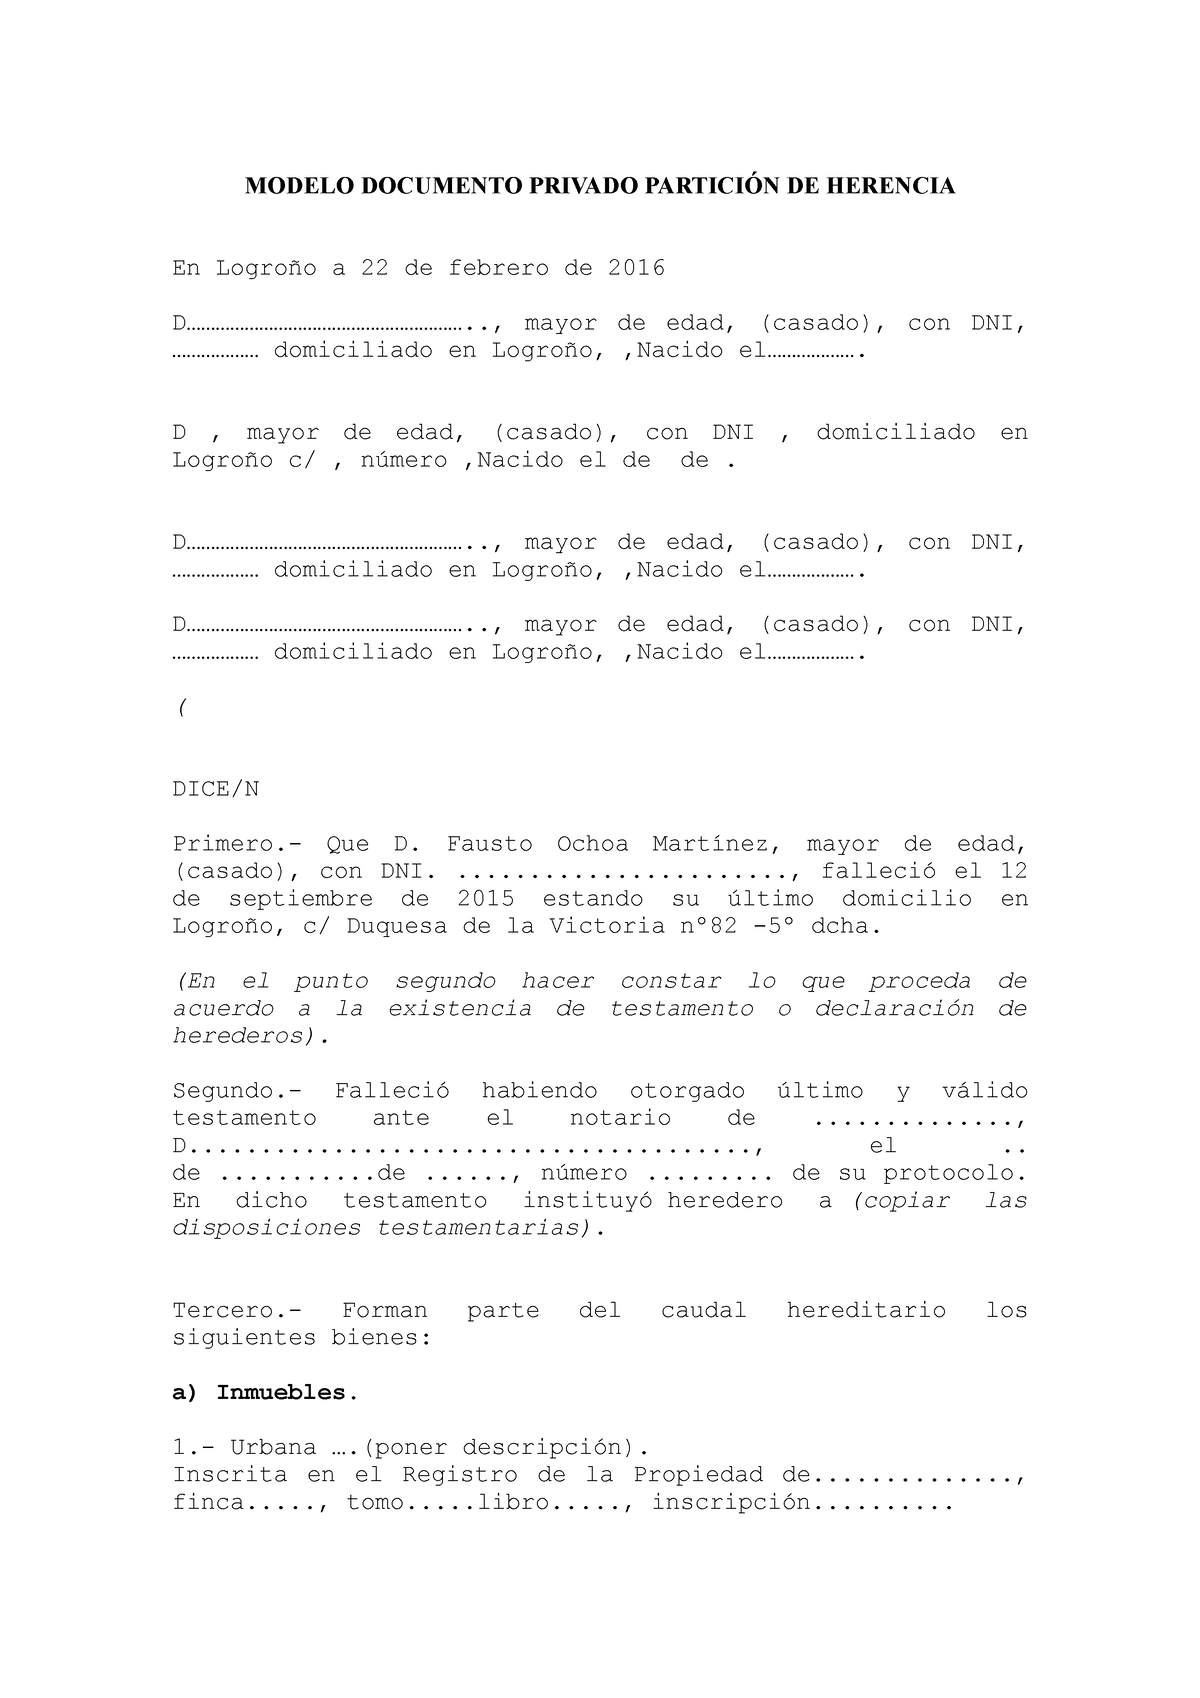 327170297 Modelo Documento Privado Particion de Herencia - MODELO DOCUMENTO PRIVADO  PARTICIÓN DE - Studocu